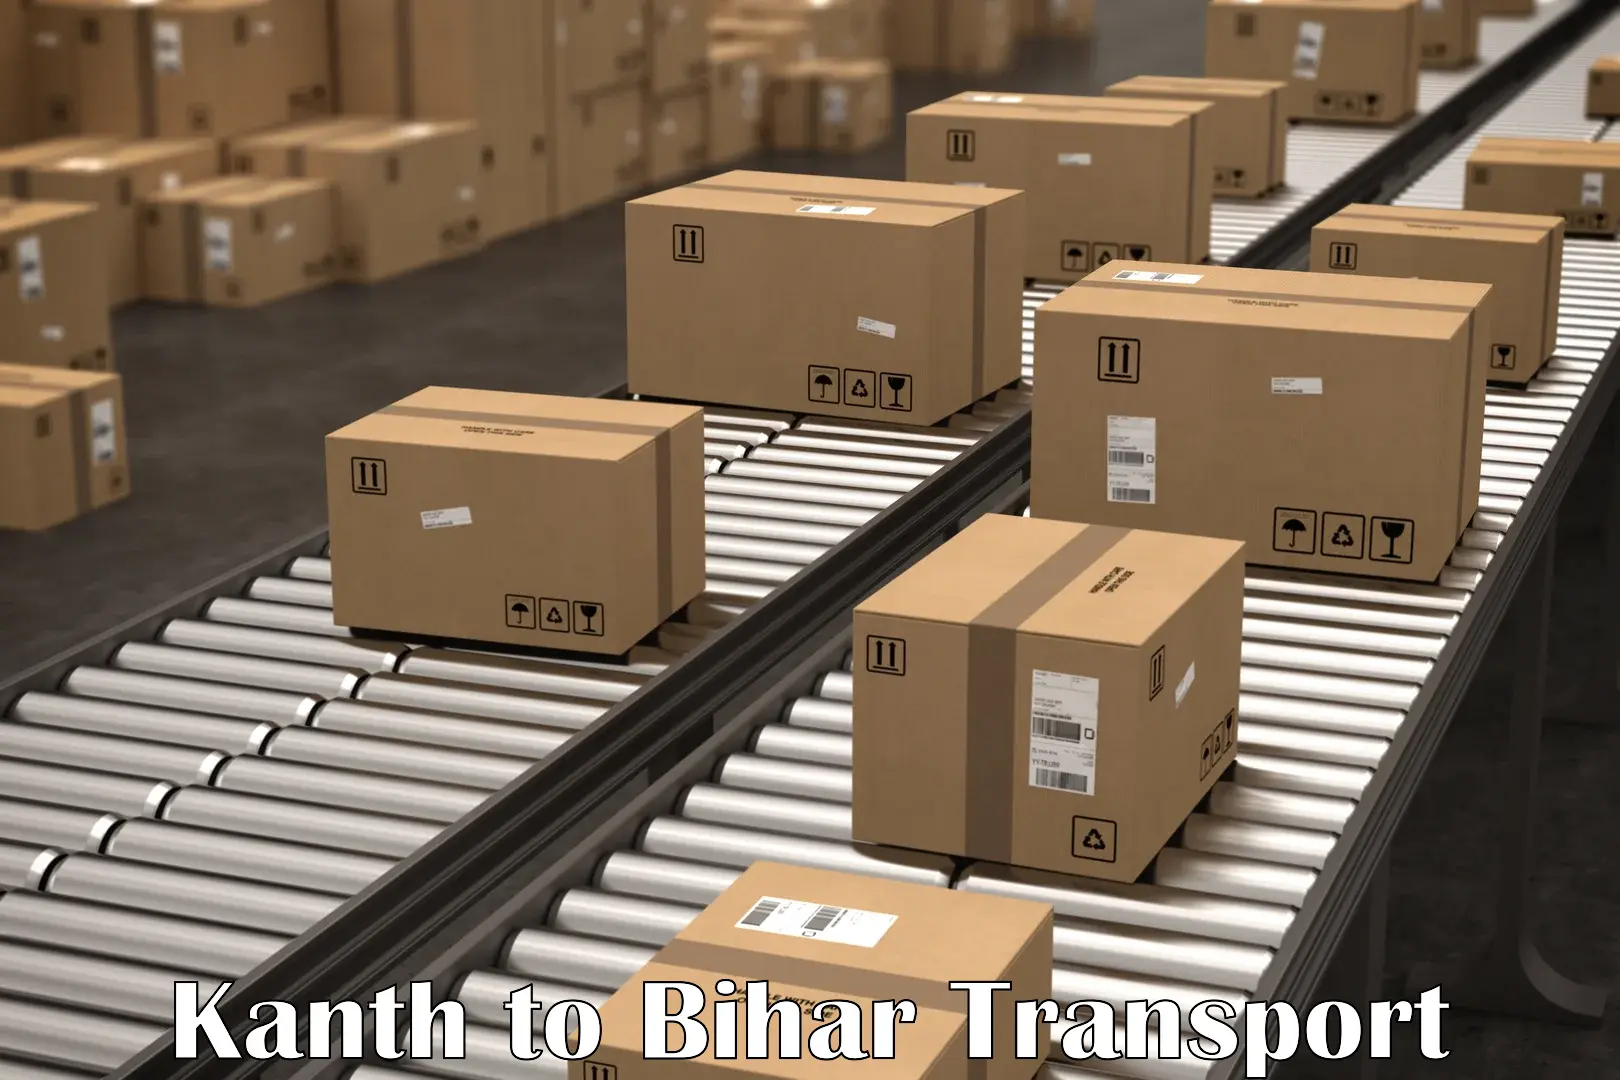 Cargo transport services Kanth to Gaya